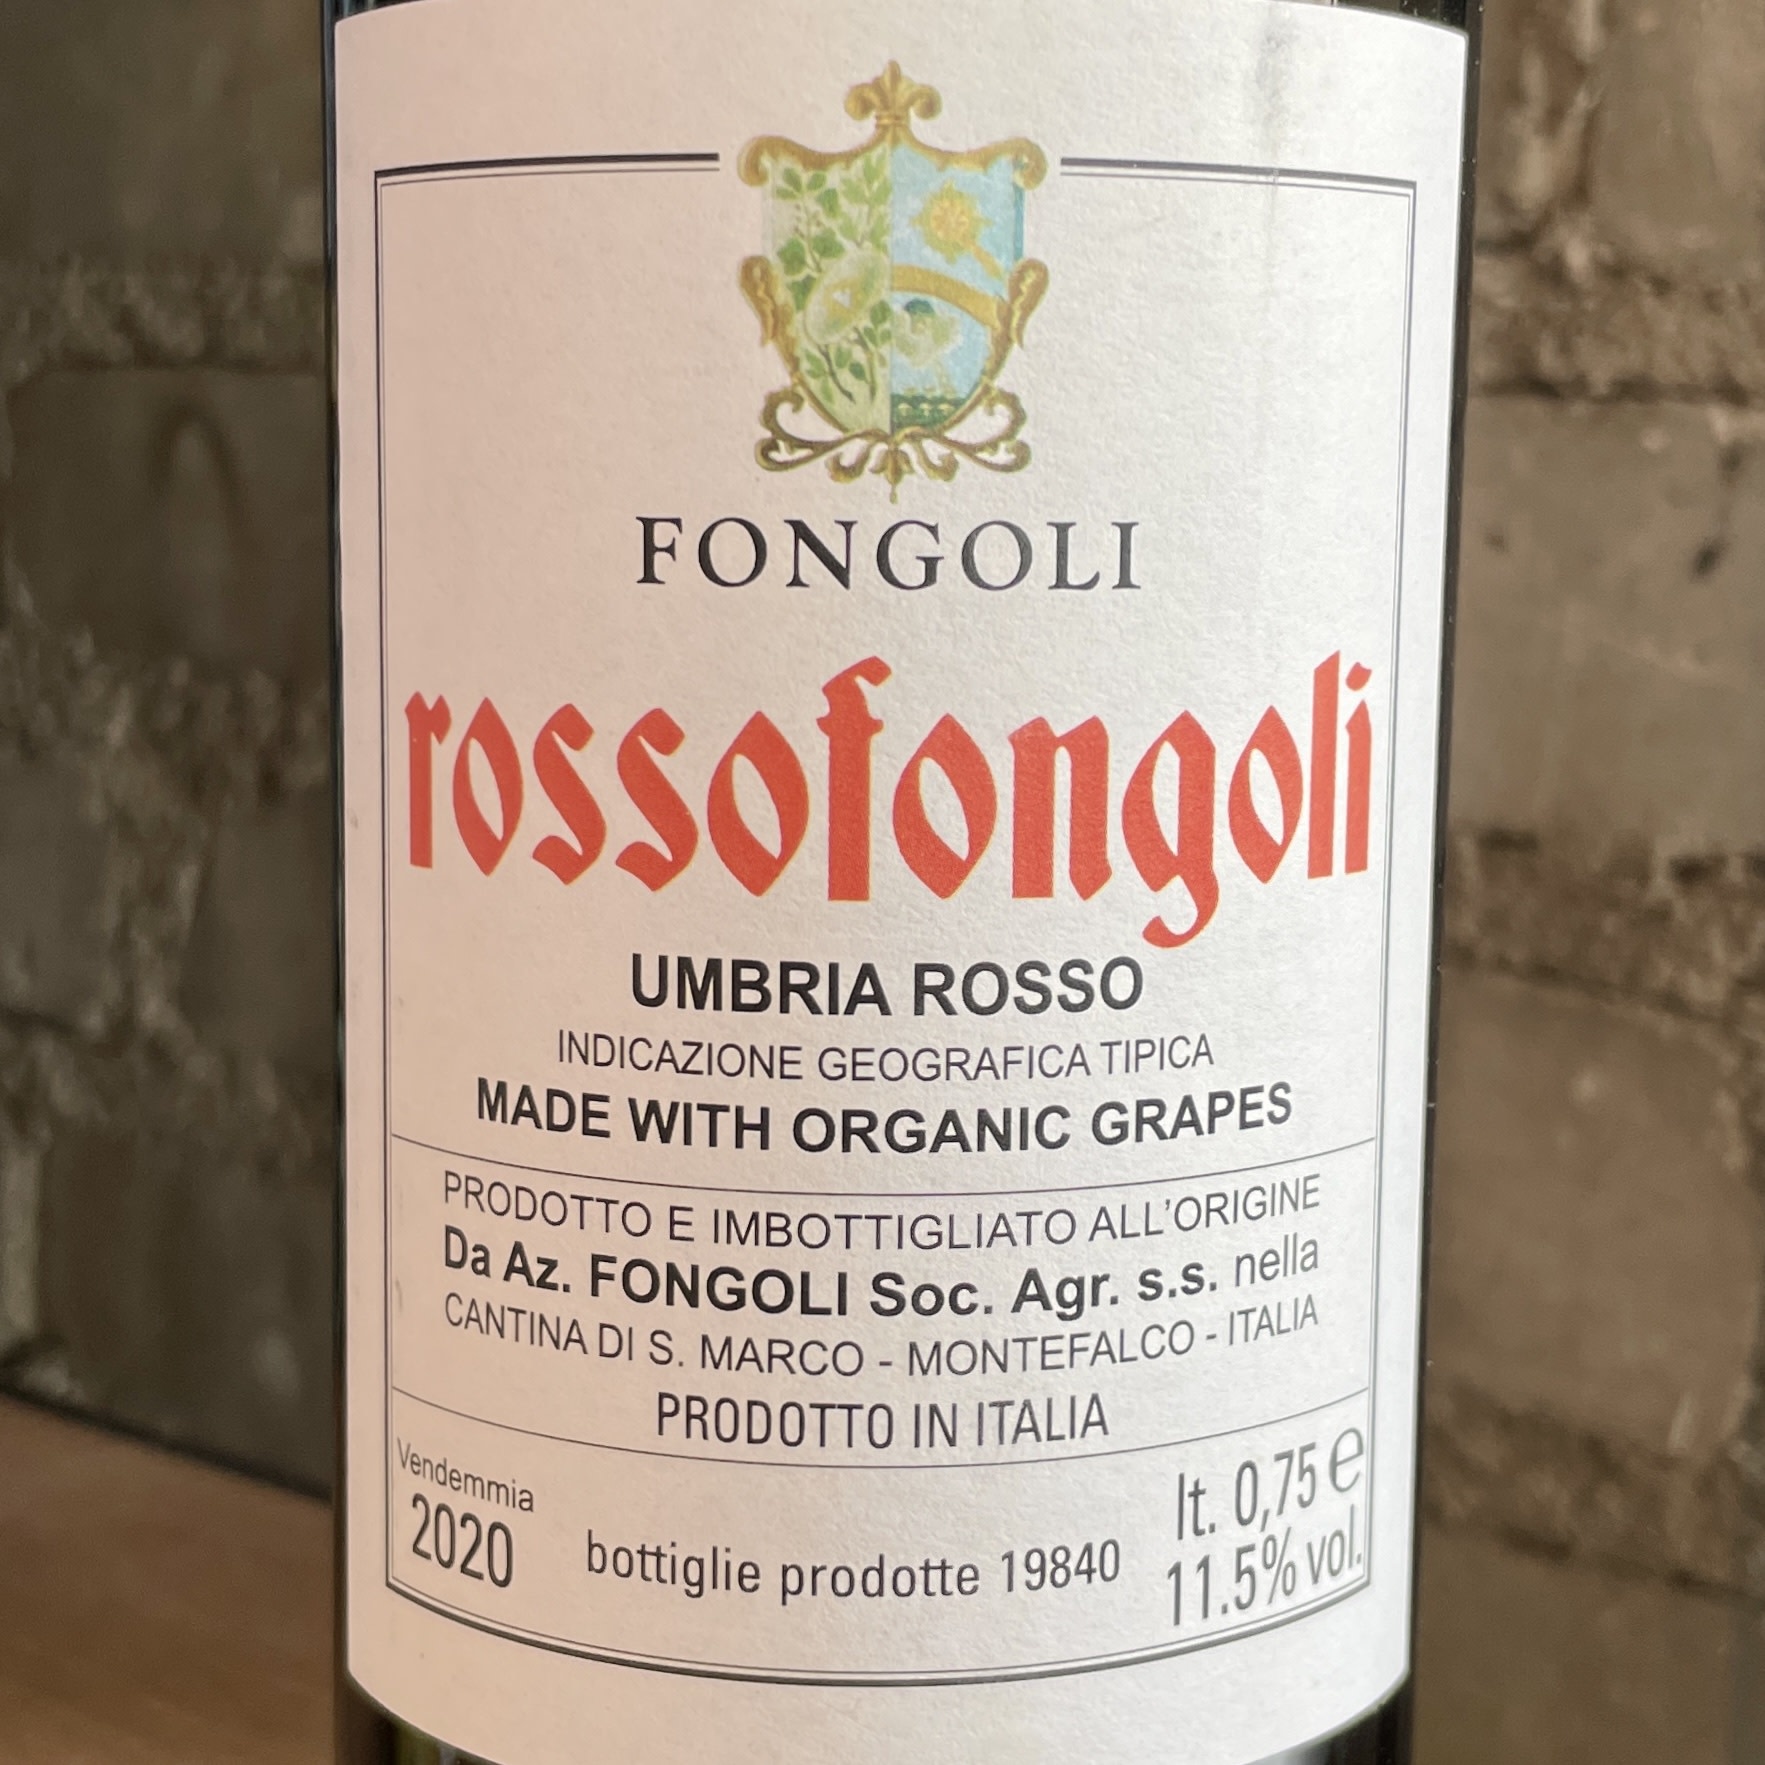 Italy 2020 Fongoli "Rossofongoli"